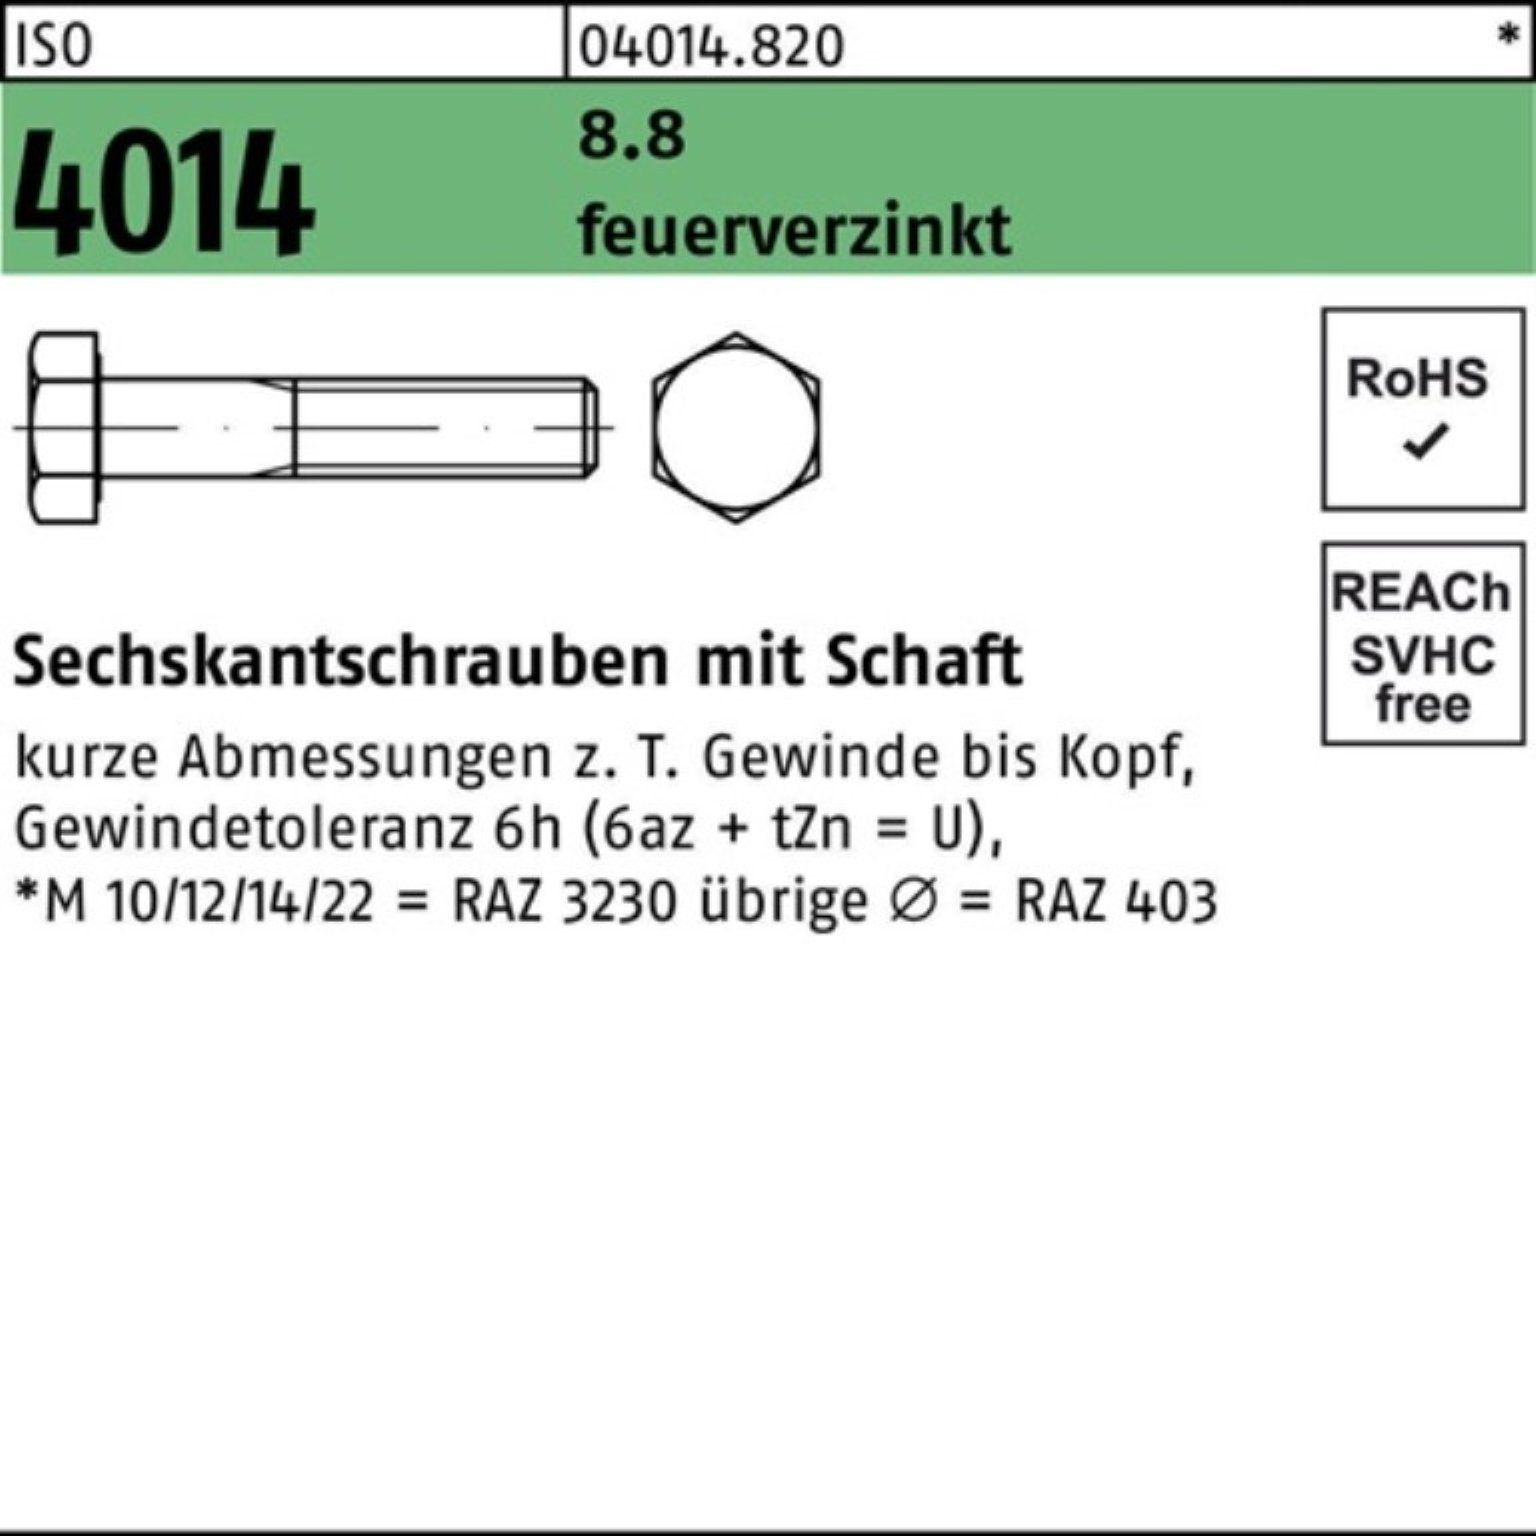 Bufab Sechskantschraube 100er Pack Sechskantschraube ISO 4014 Schaft M10x 50 8.8 feuerverz. 10